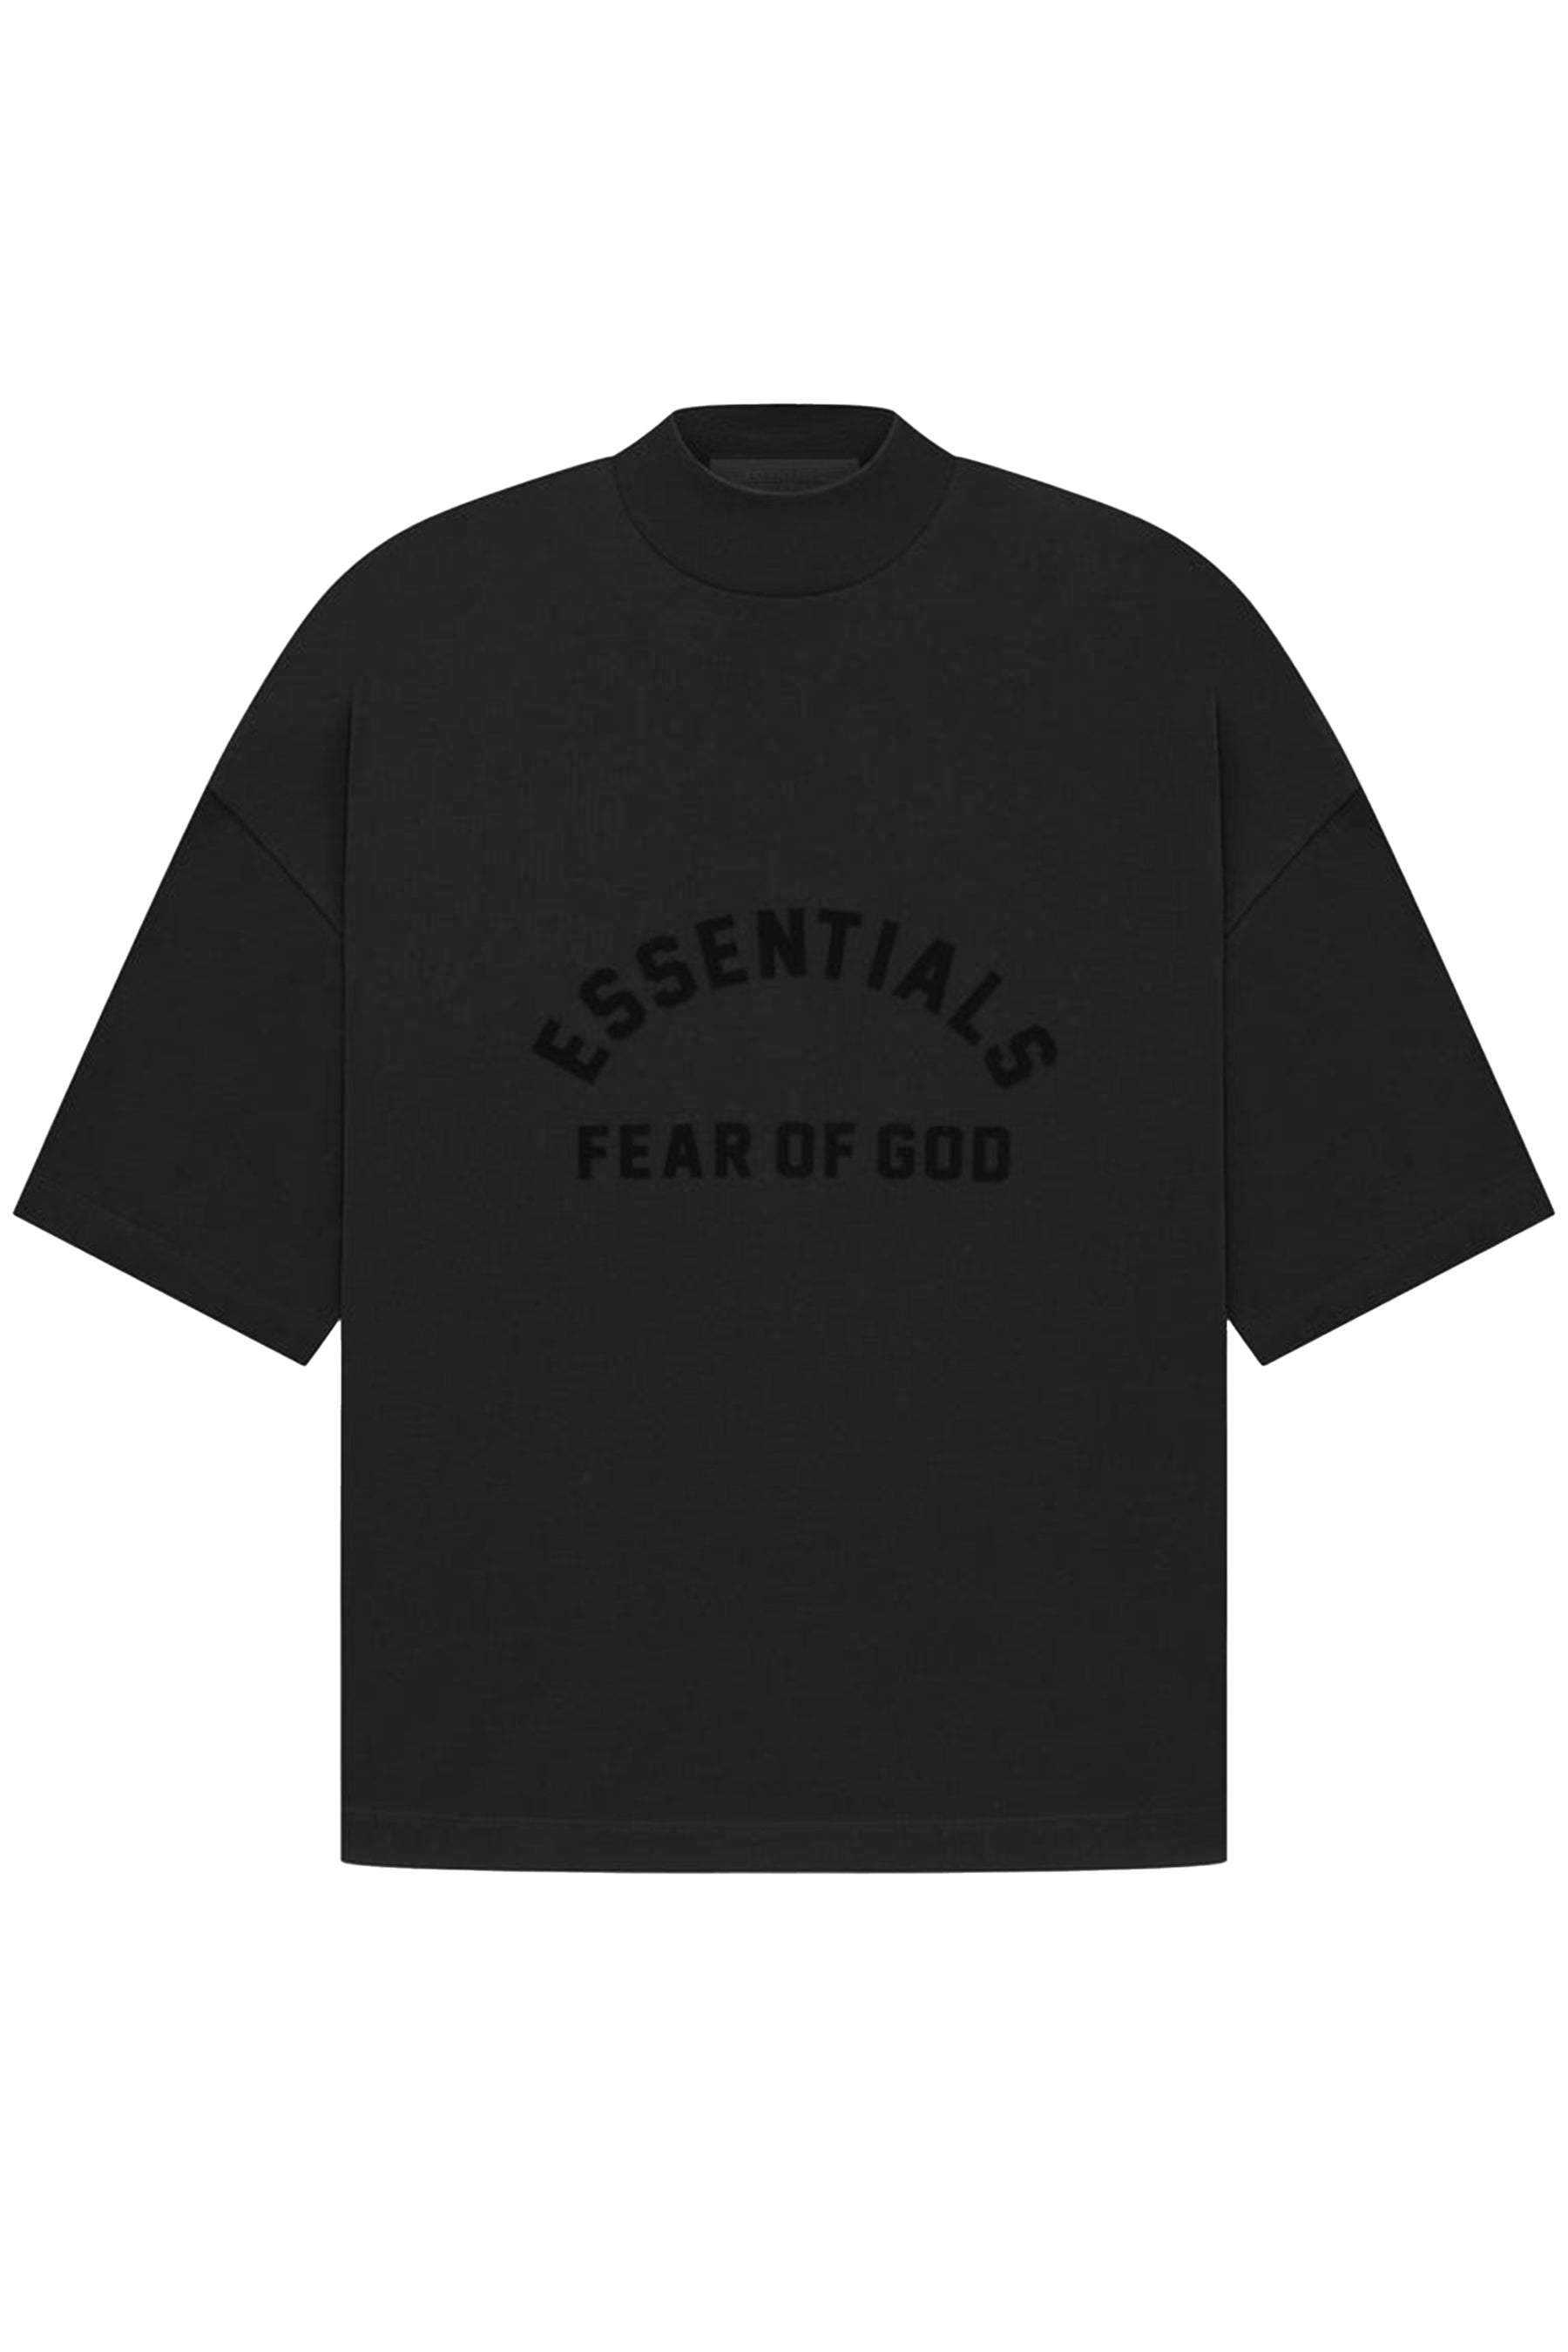 Essentials Logo Sweatshirt black S 2枚セット